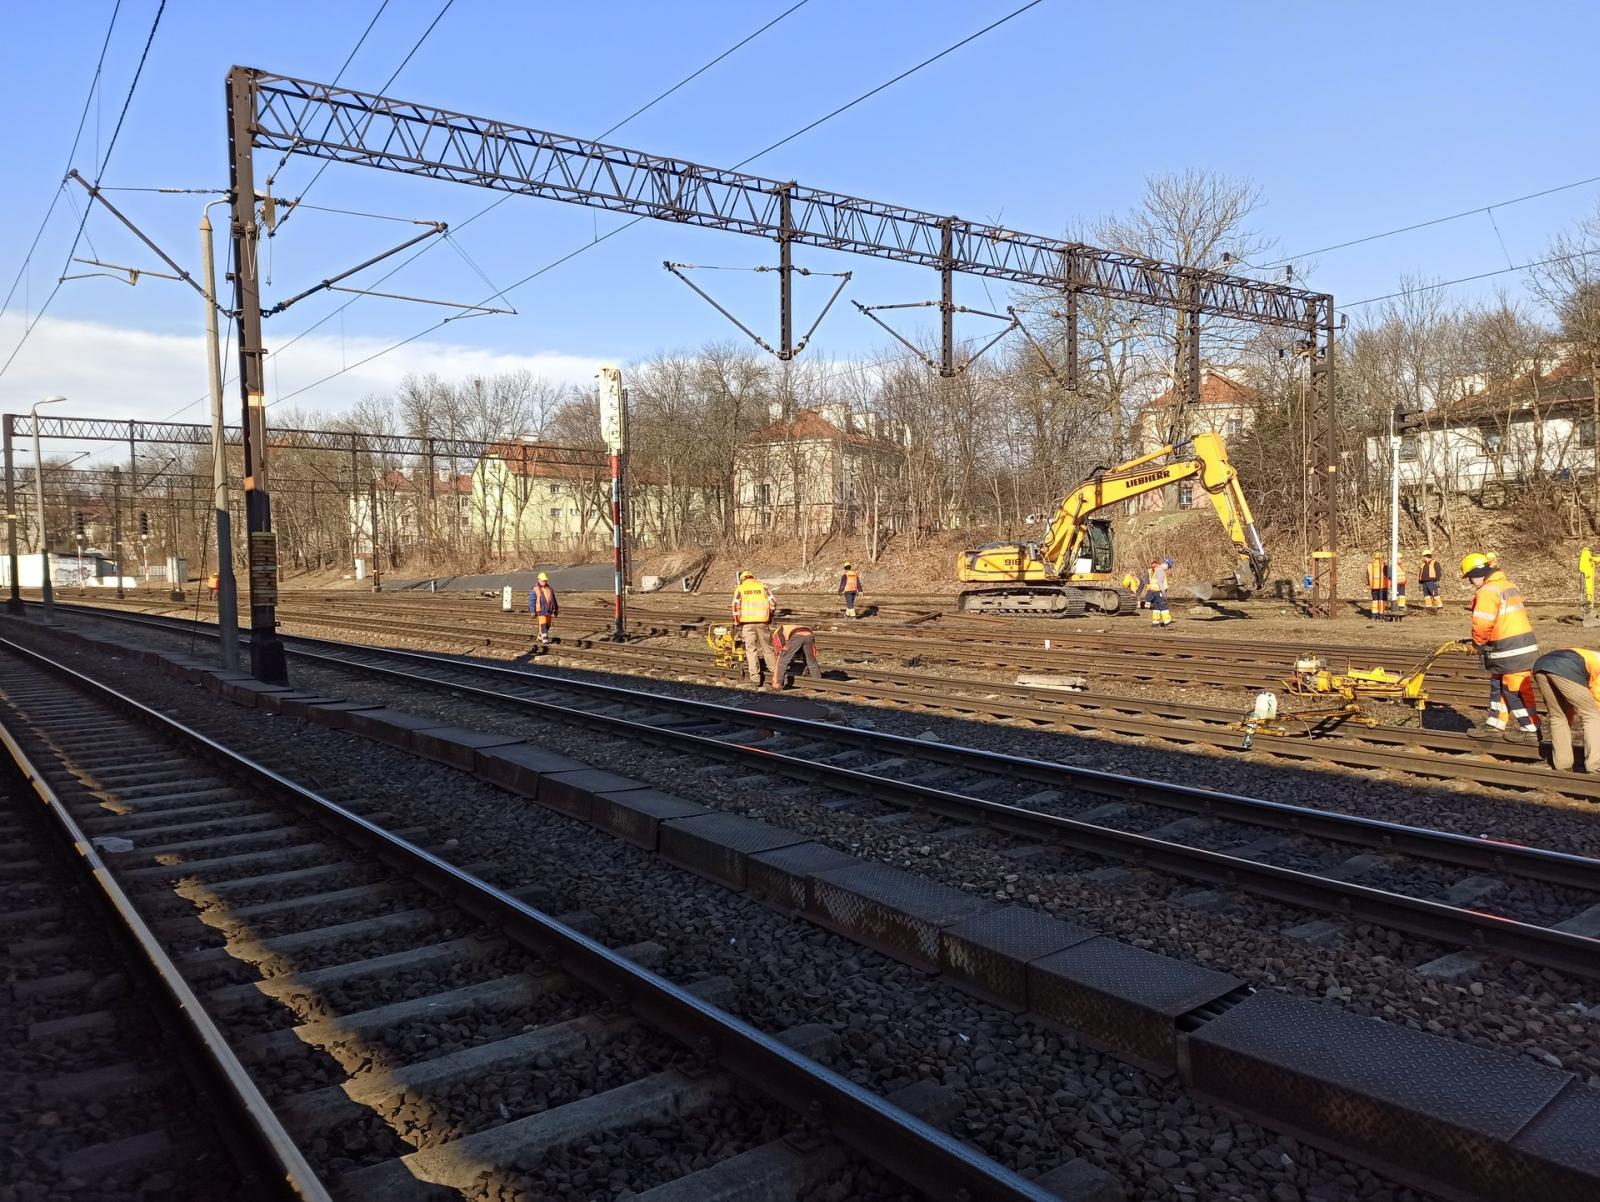 Rusza modernizacja stacji Olsztyn Główny – wzrośnie komfort podróży pociągami